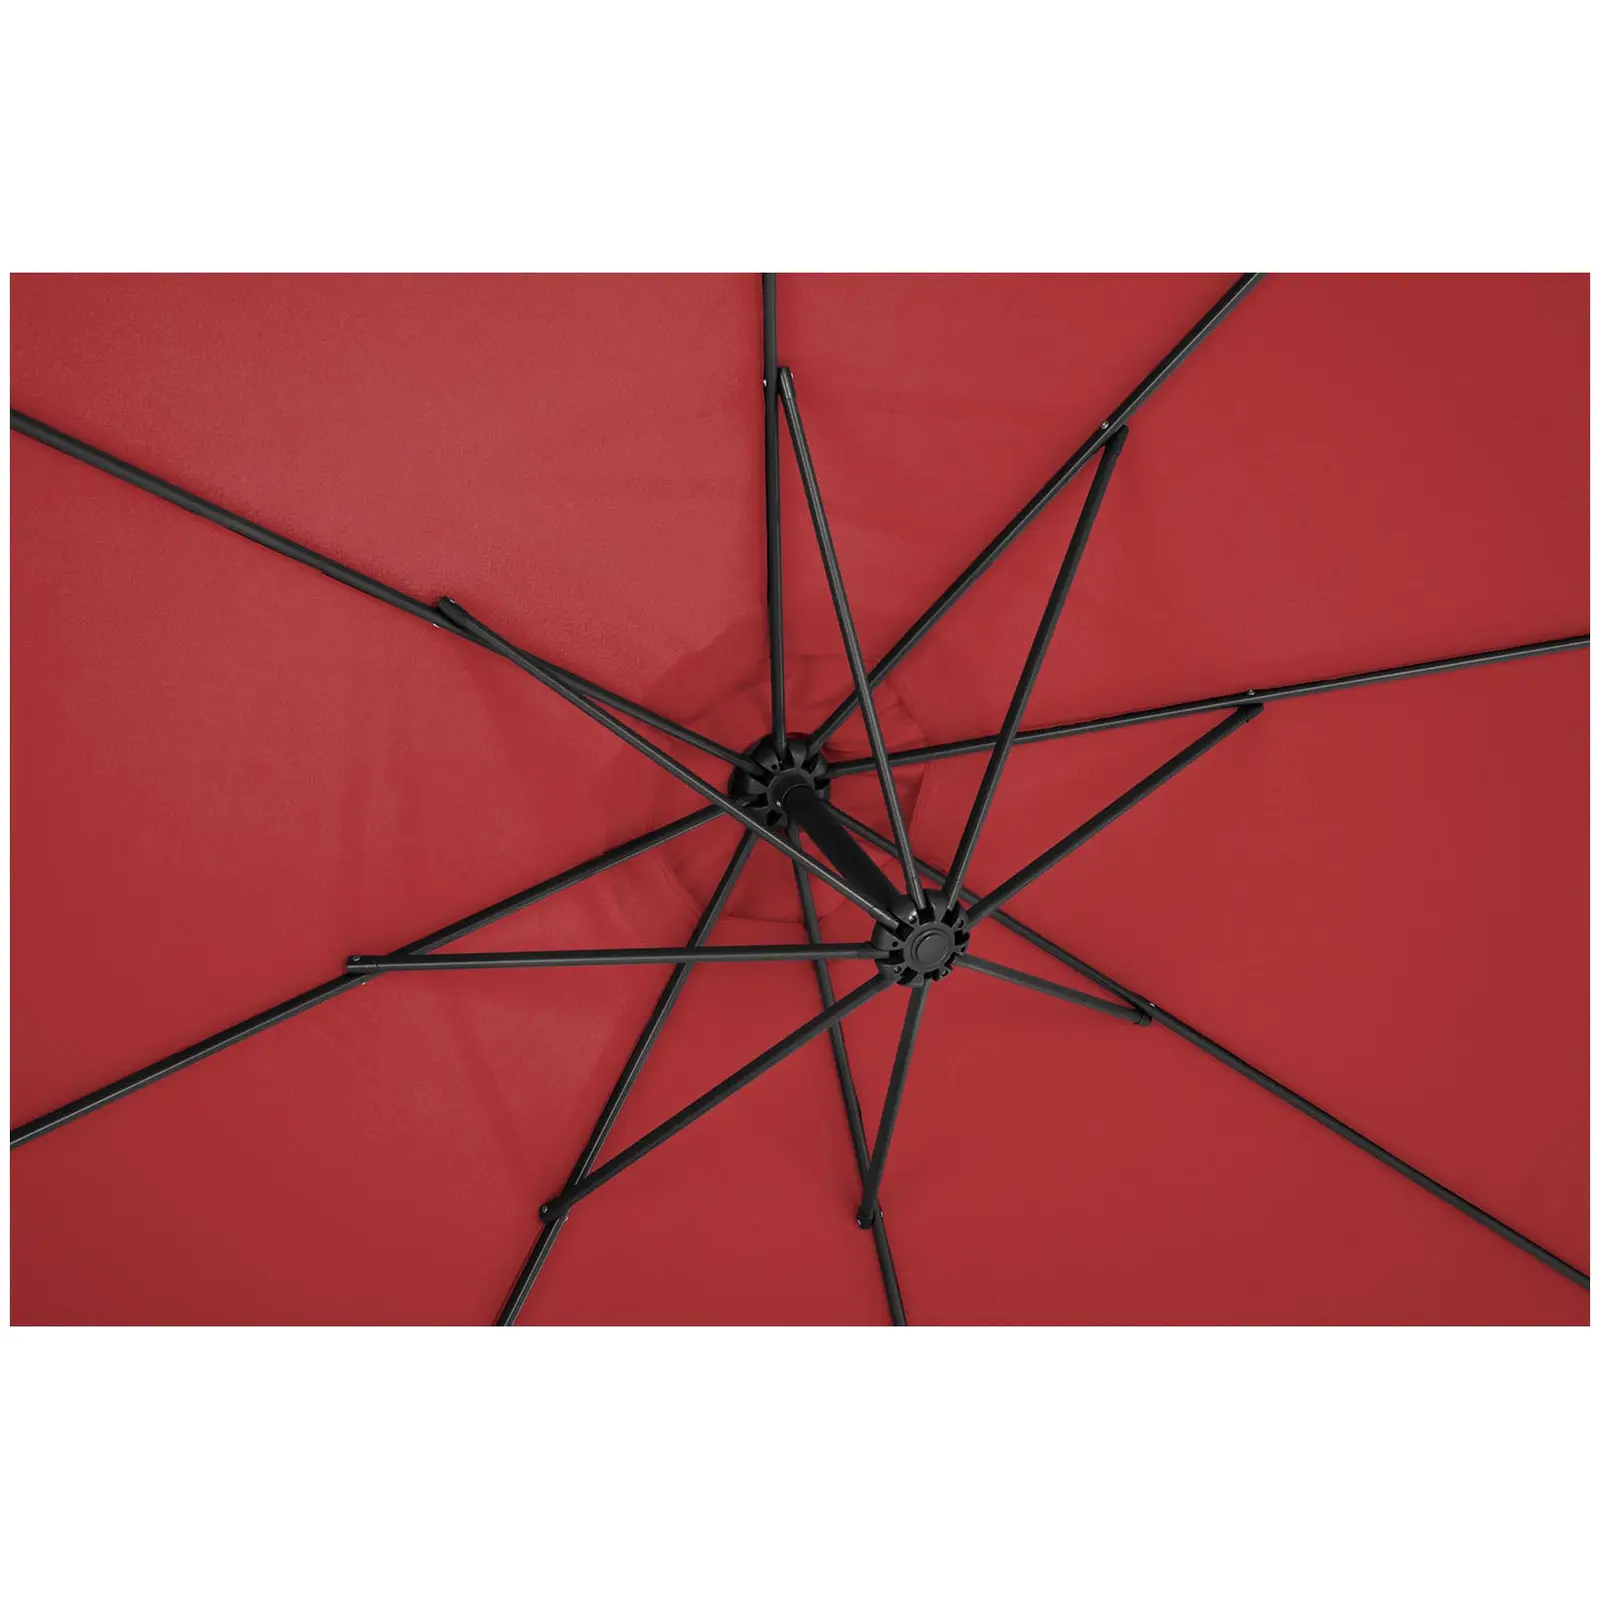 Garden umbrella - claret  - round - Ø 300 cm - tiltable